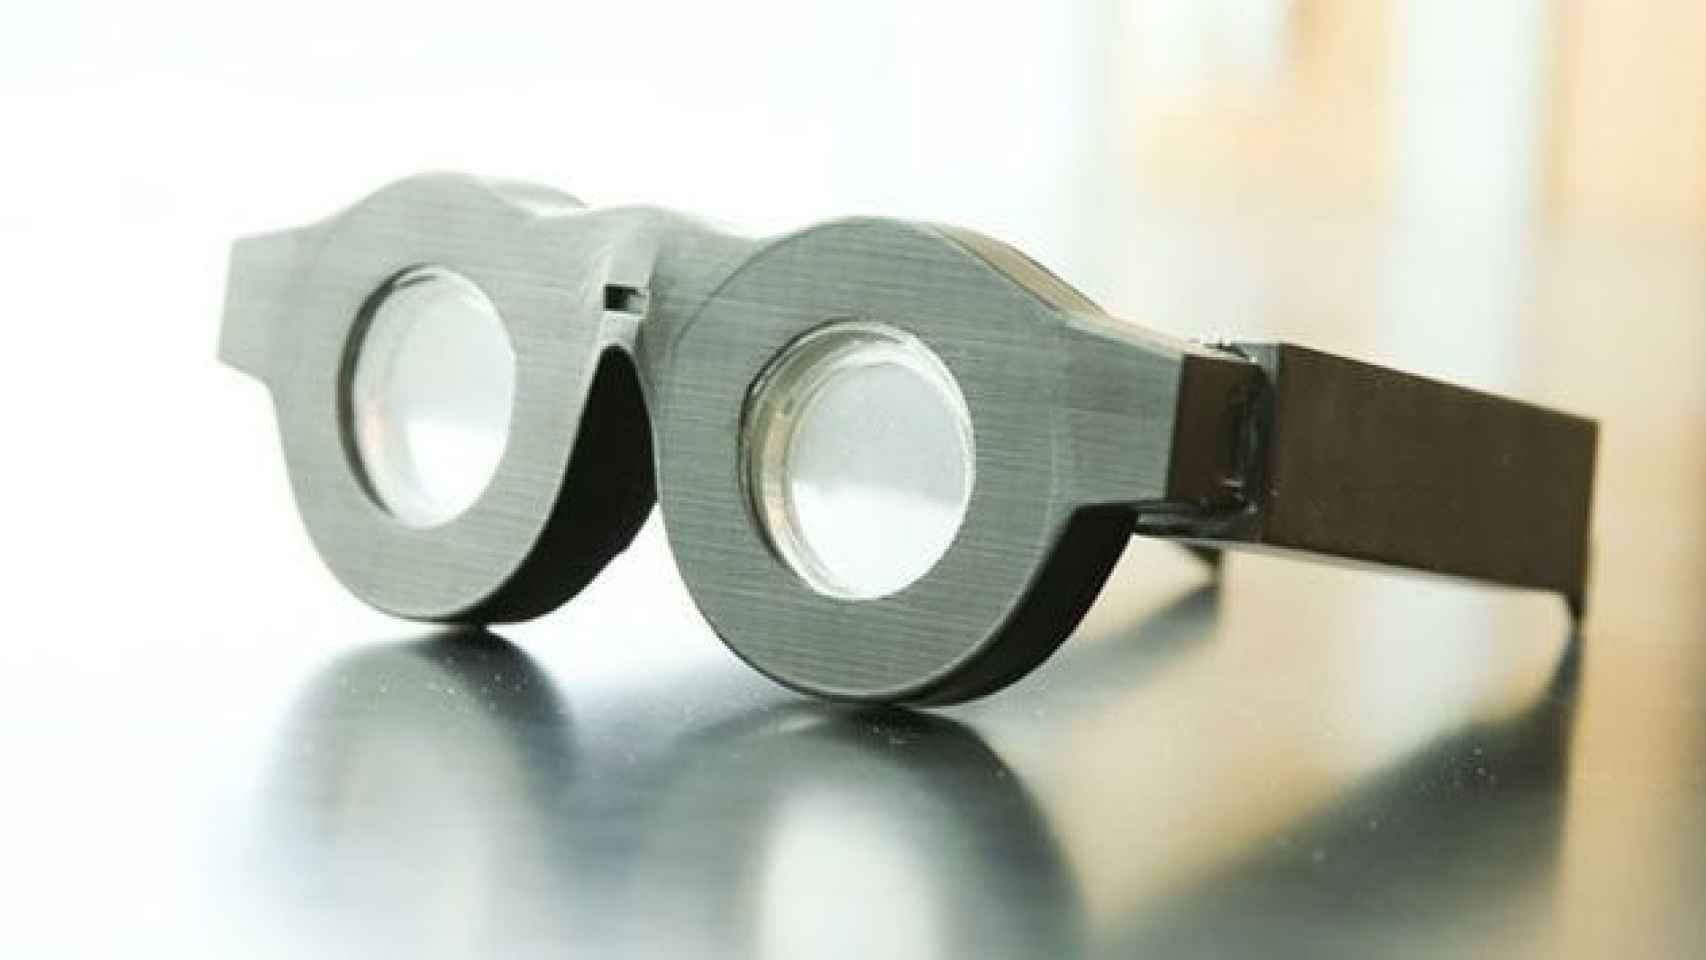 Gafas inteligentes que se autoenfocan a lo que mira su portador